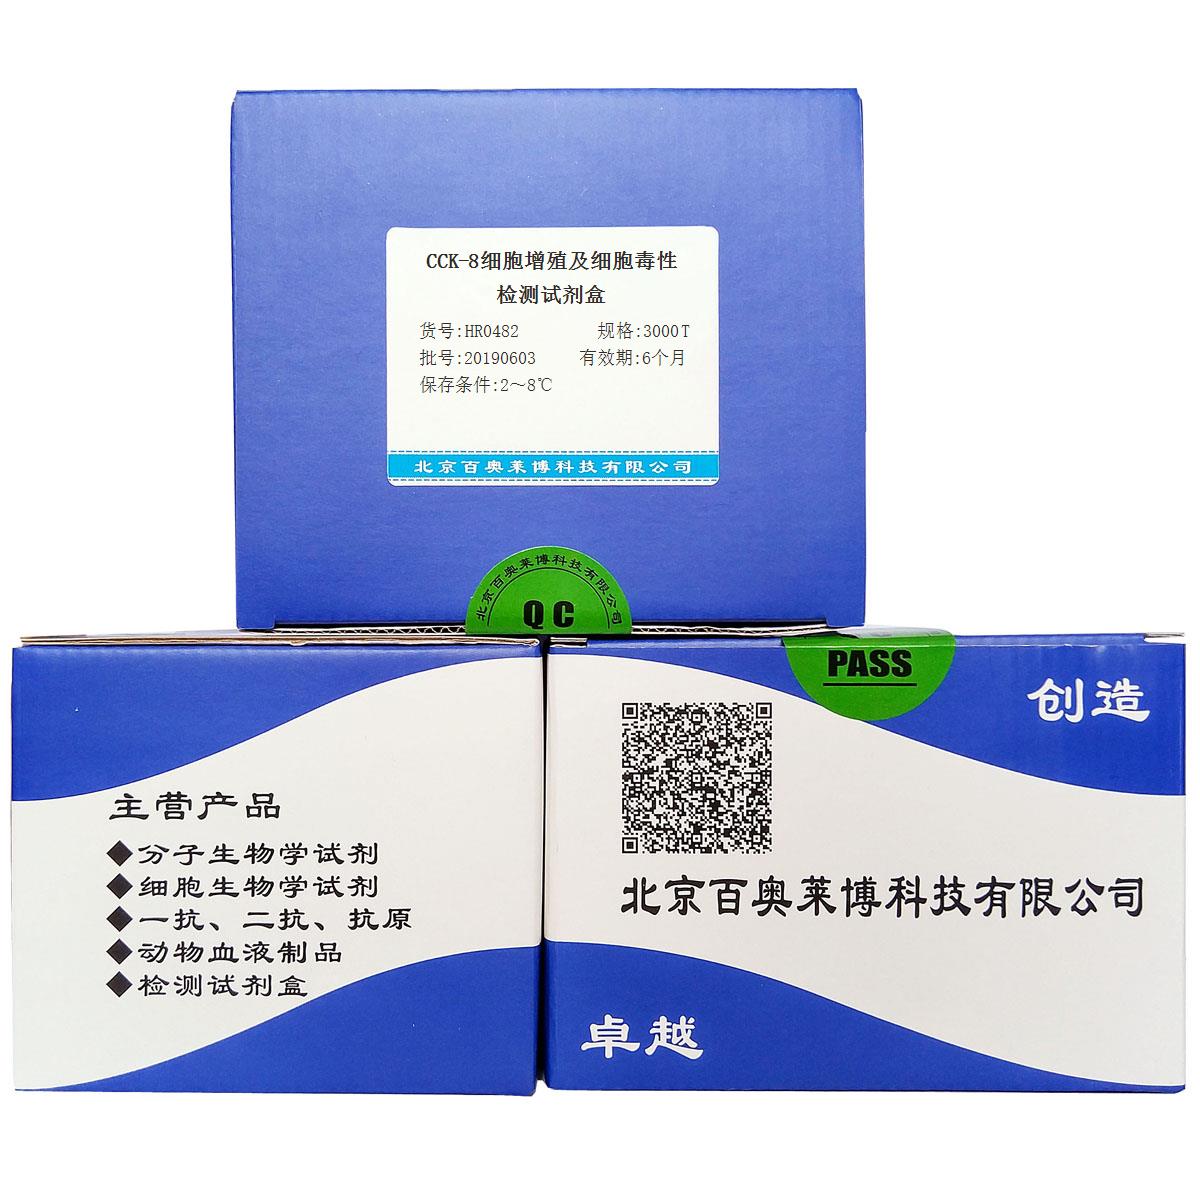 CCK-8细胞增殖及细胞毒性检测试剂盒北京供应商